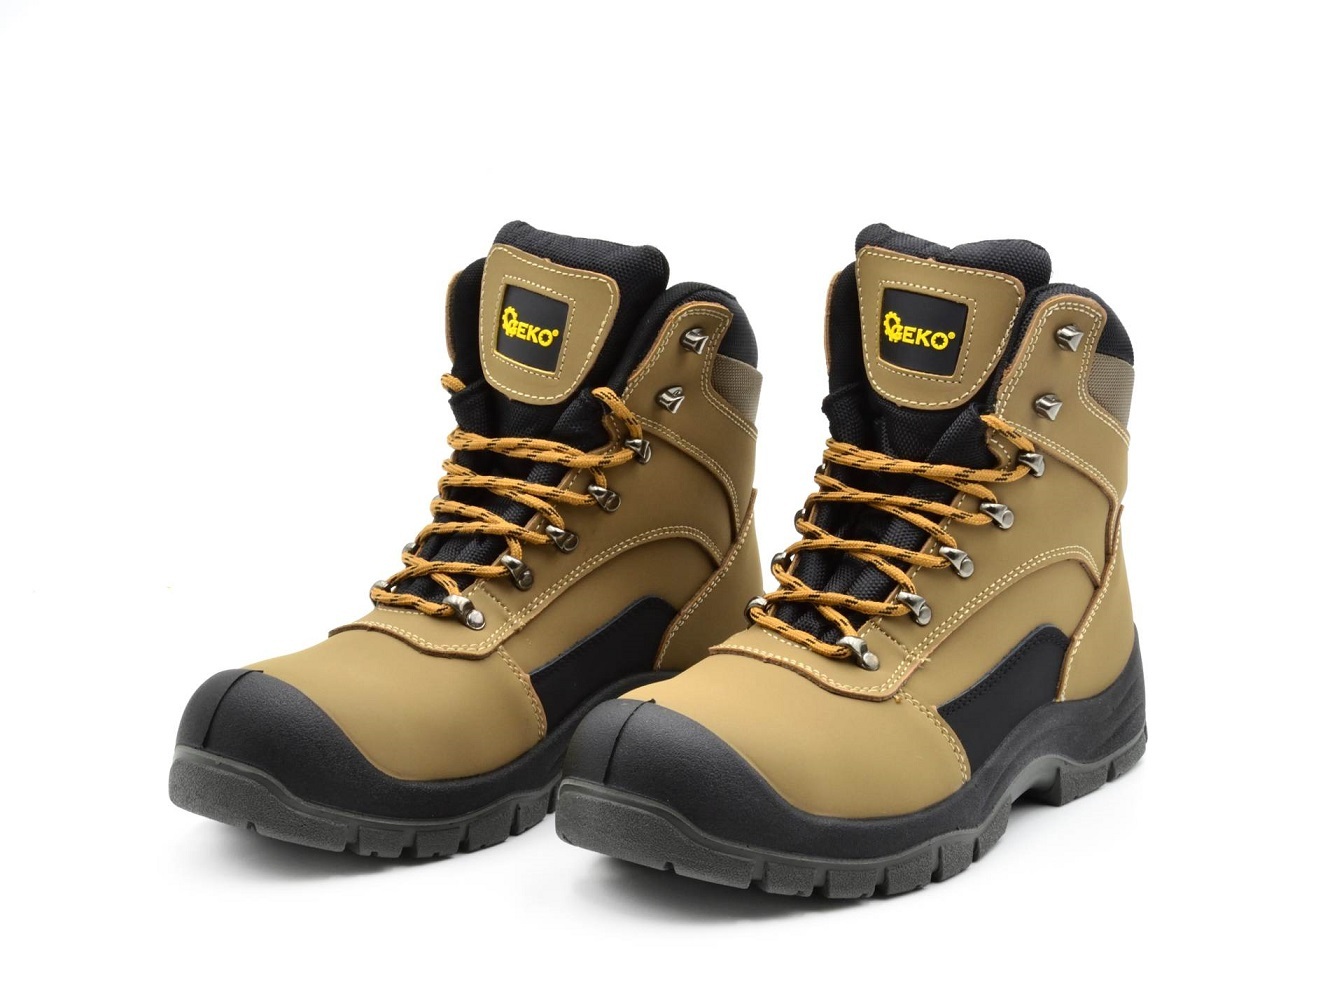 Ochranné pracovní boty velikost 40 GEKO nářadí G90541-40 + Dárek, servis bez starostí v hodnotě 300Kč